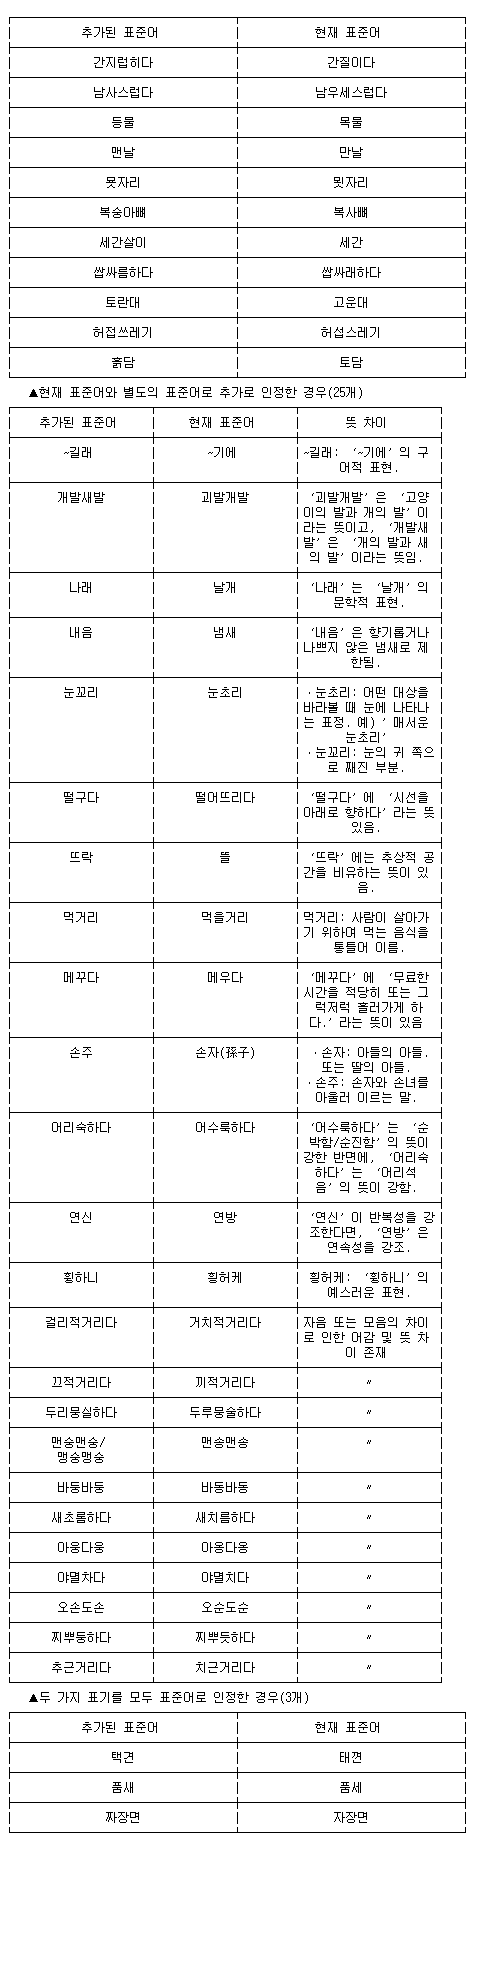 ▲ 31일 국립국어원이 발표한 새 표준어 항목.ⓒ 연합뉴스